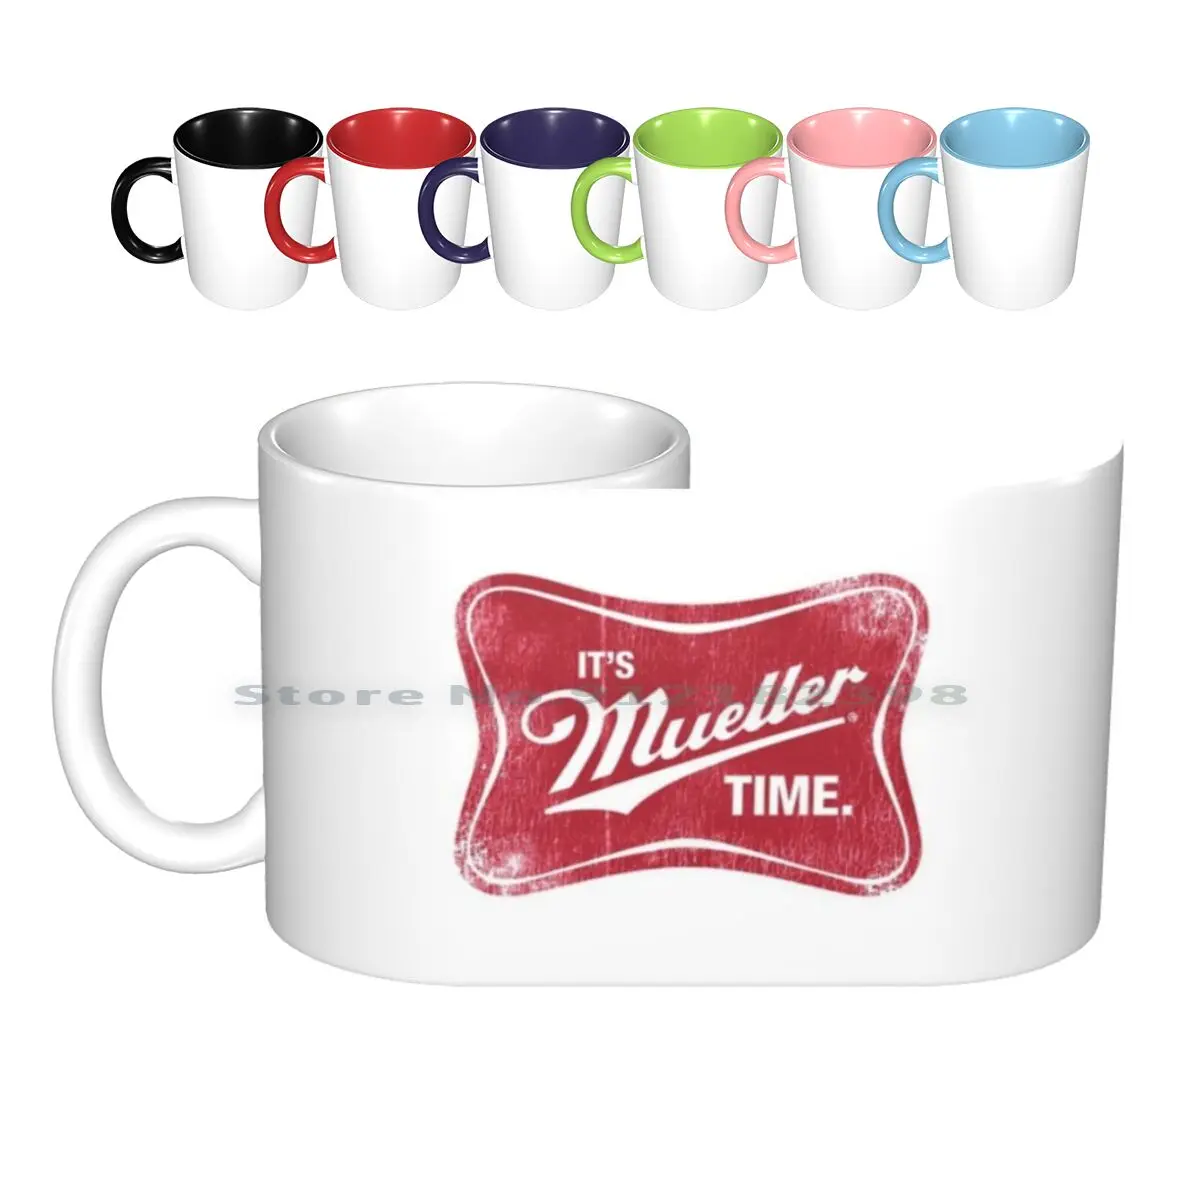 

Mueller Time керамические кружки, кофейные чашки, Кружка для молока и чая, Роберт муллер, тайм Трамп, стойкость не моему президенту для женщин